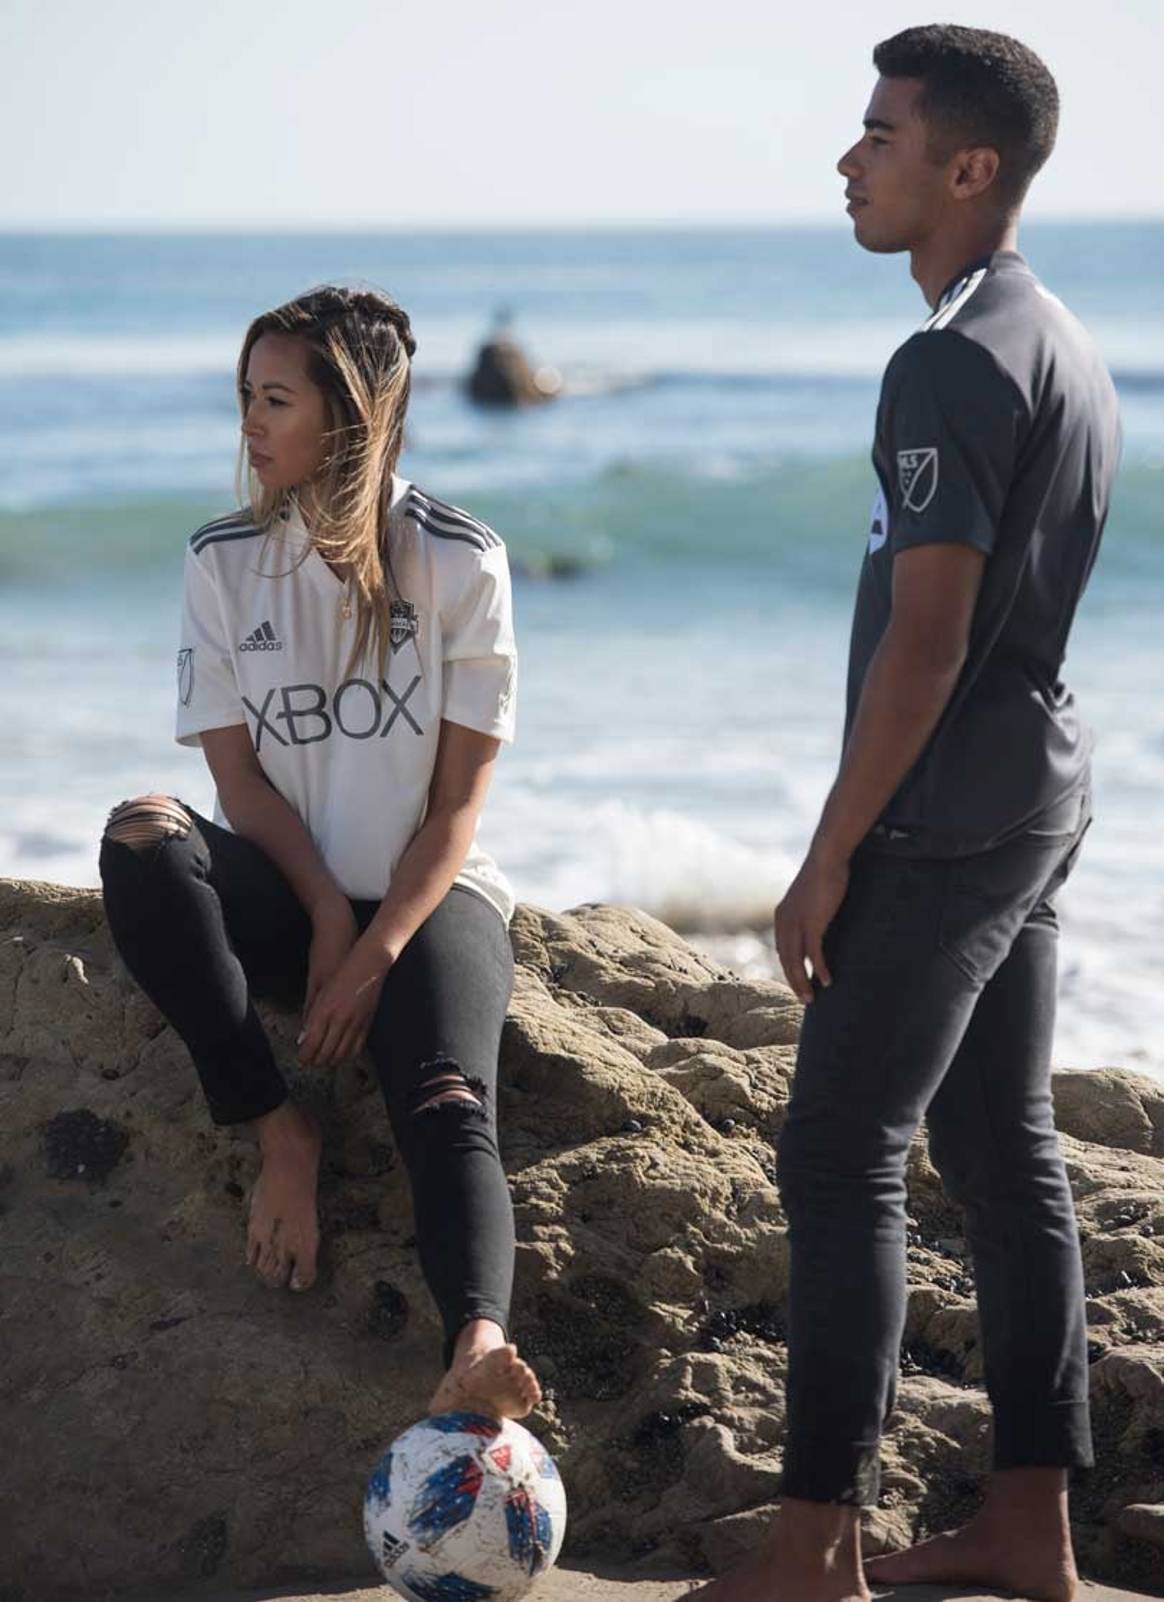 Adidas lanza camisetas de fútbol hechas con plástico reciclado de desechos marinos